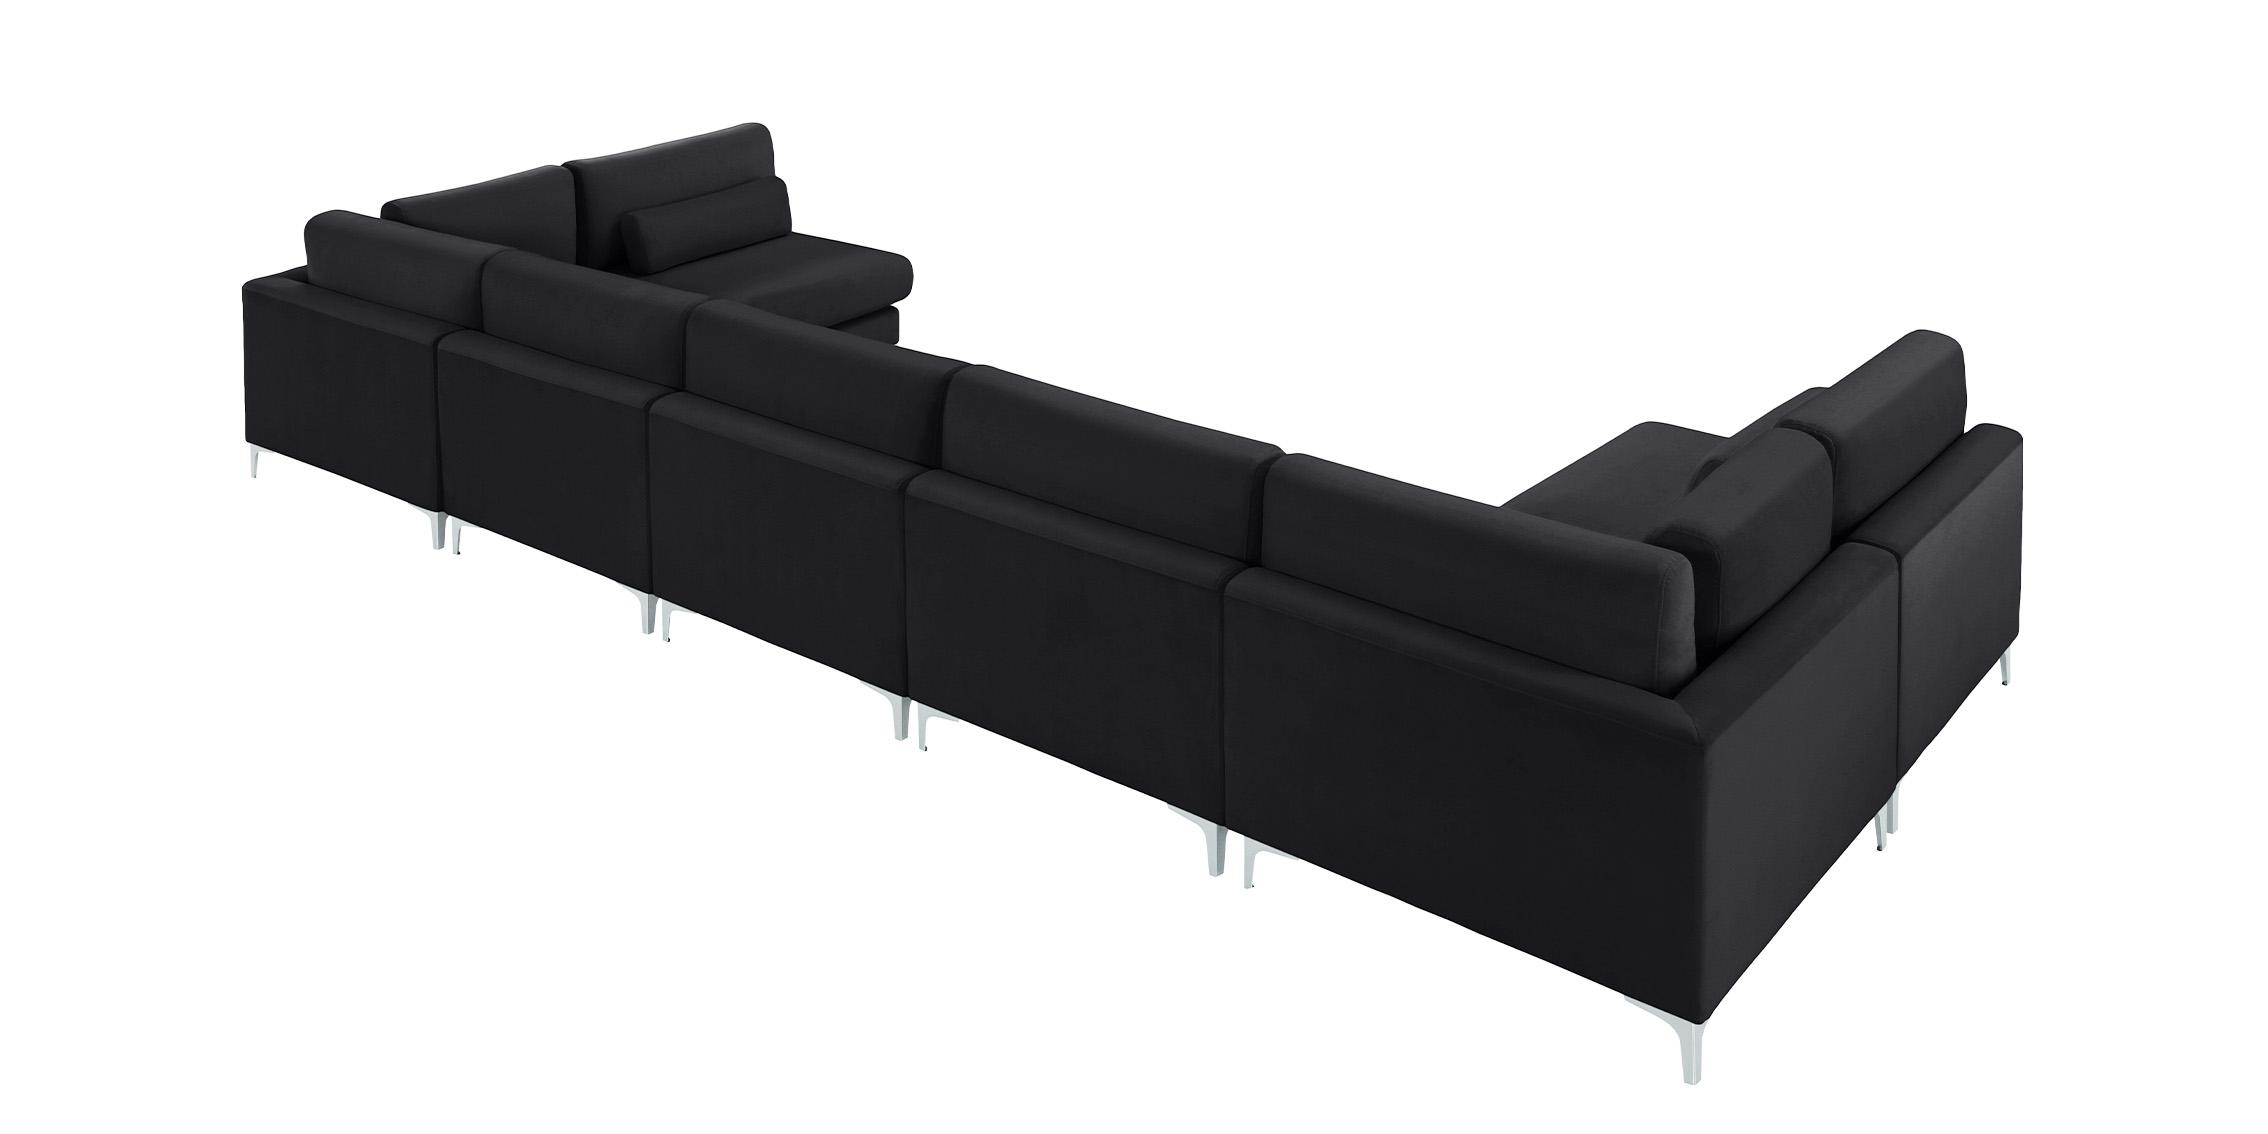 

    
Meridian Furniture JULIA 605Black-Sec7B Modular Sectional Sofa Black 605Black-Sec7B
